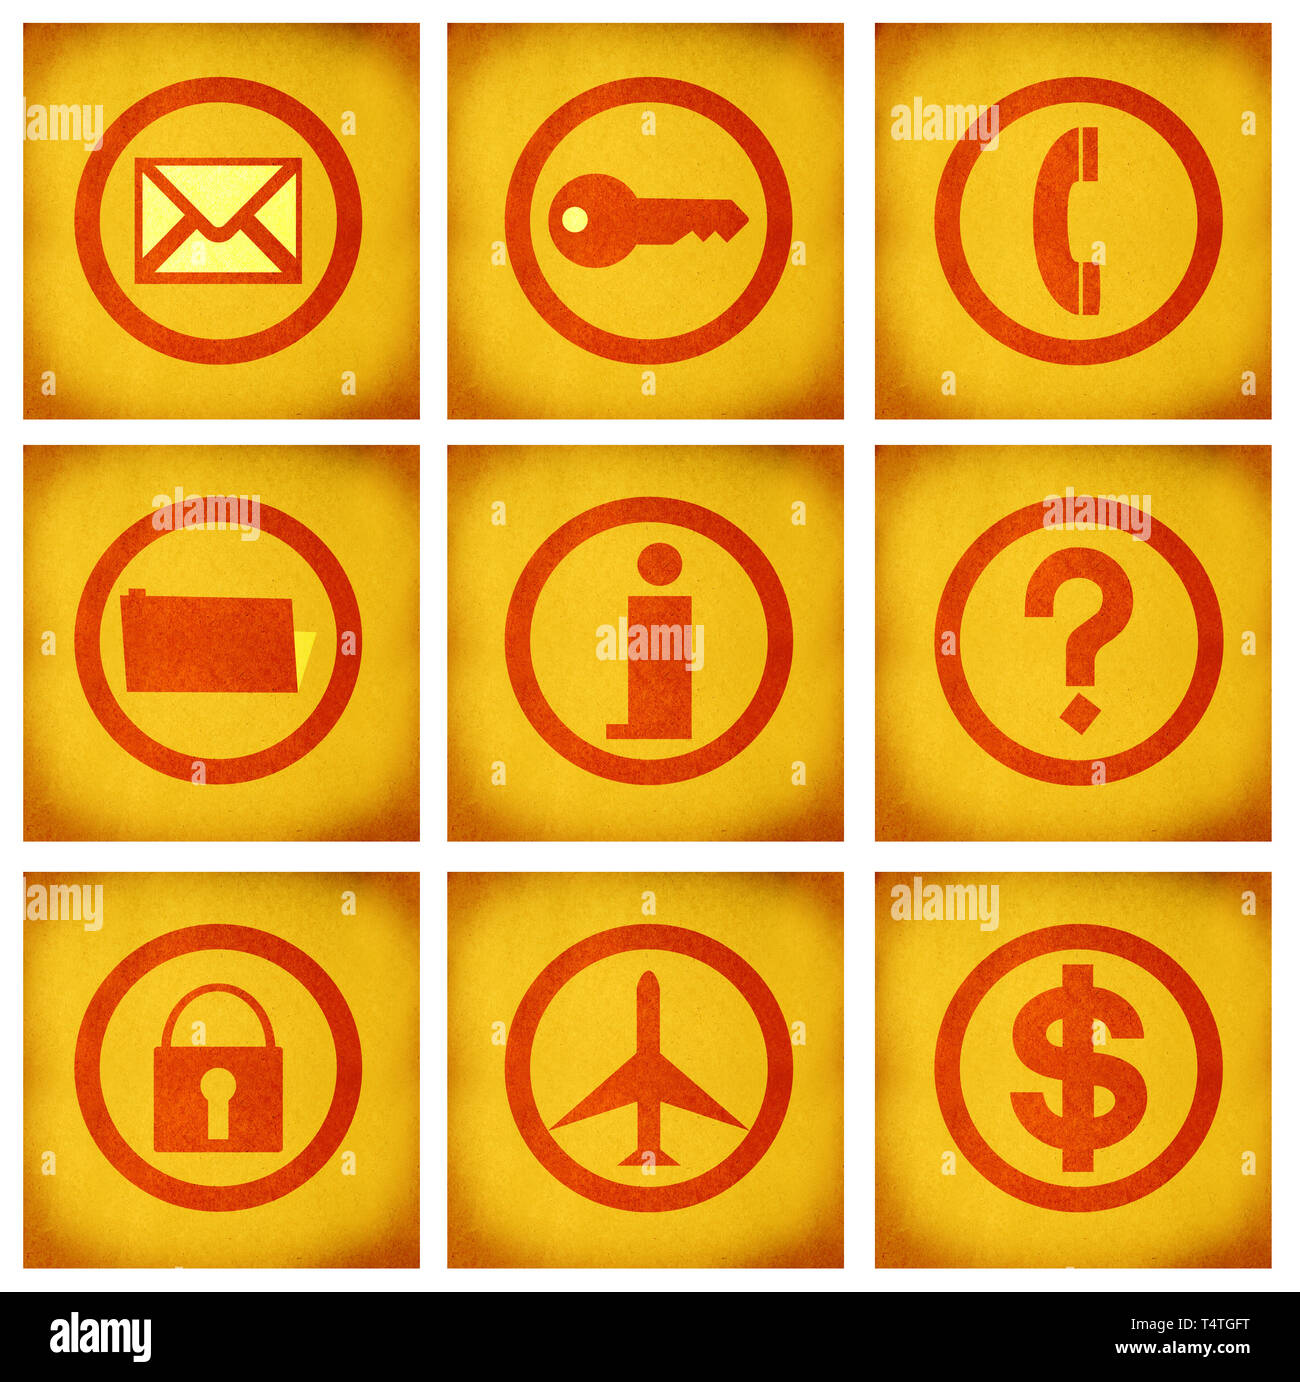 Business icon set série sur texture background Banque D'Images